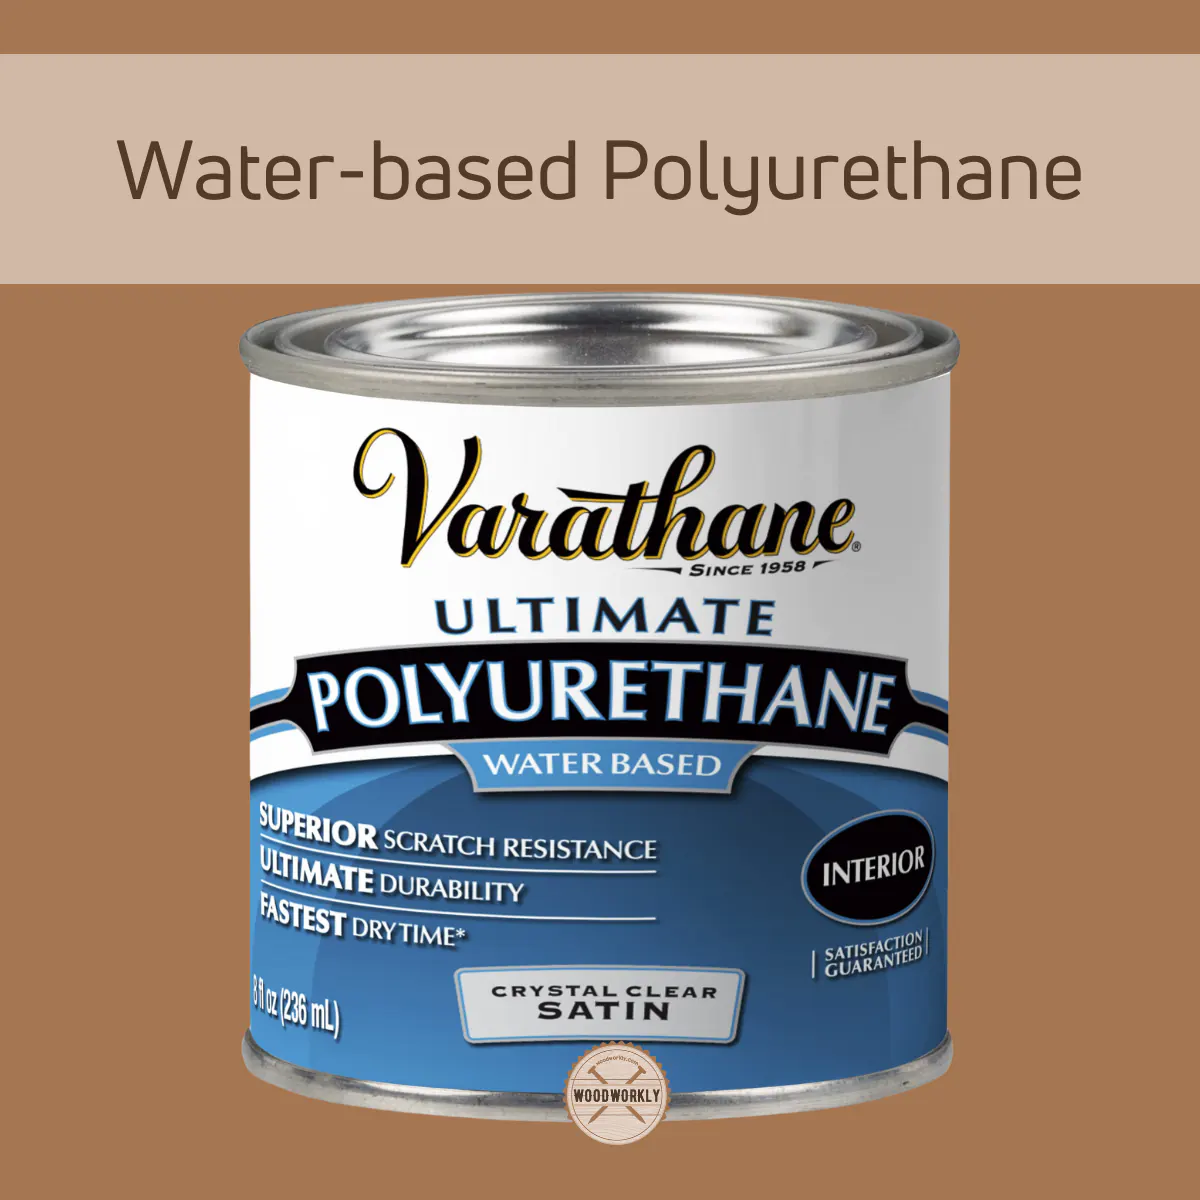 Water-based Polyurethane